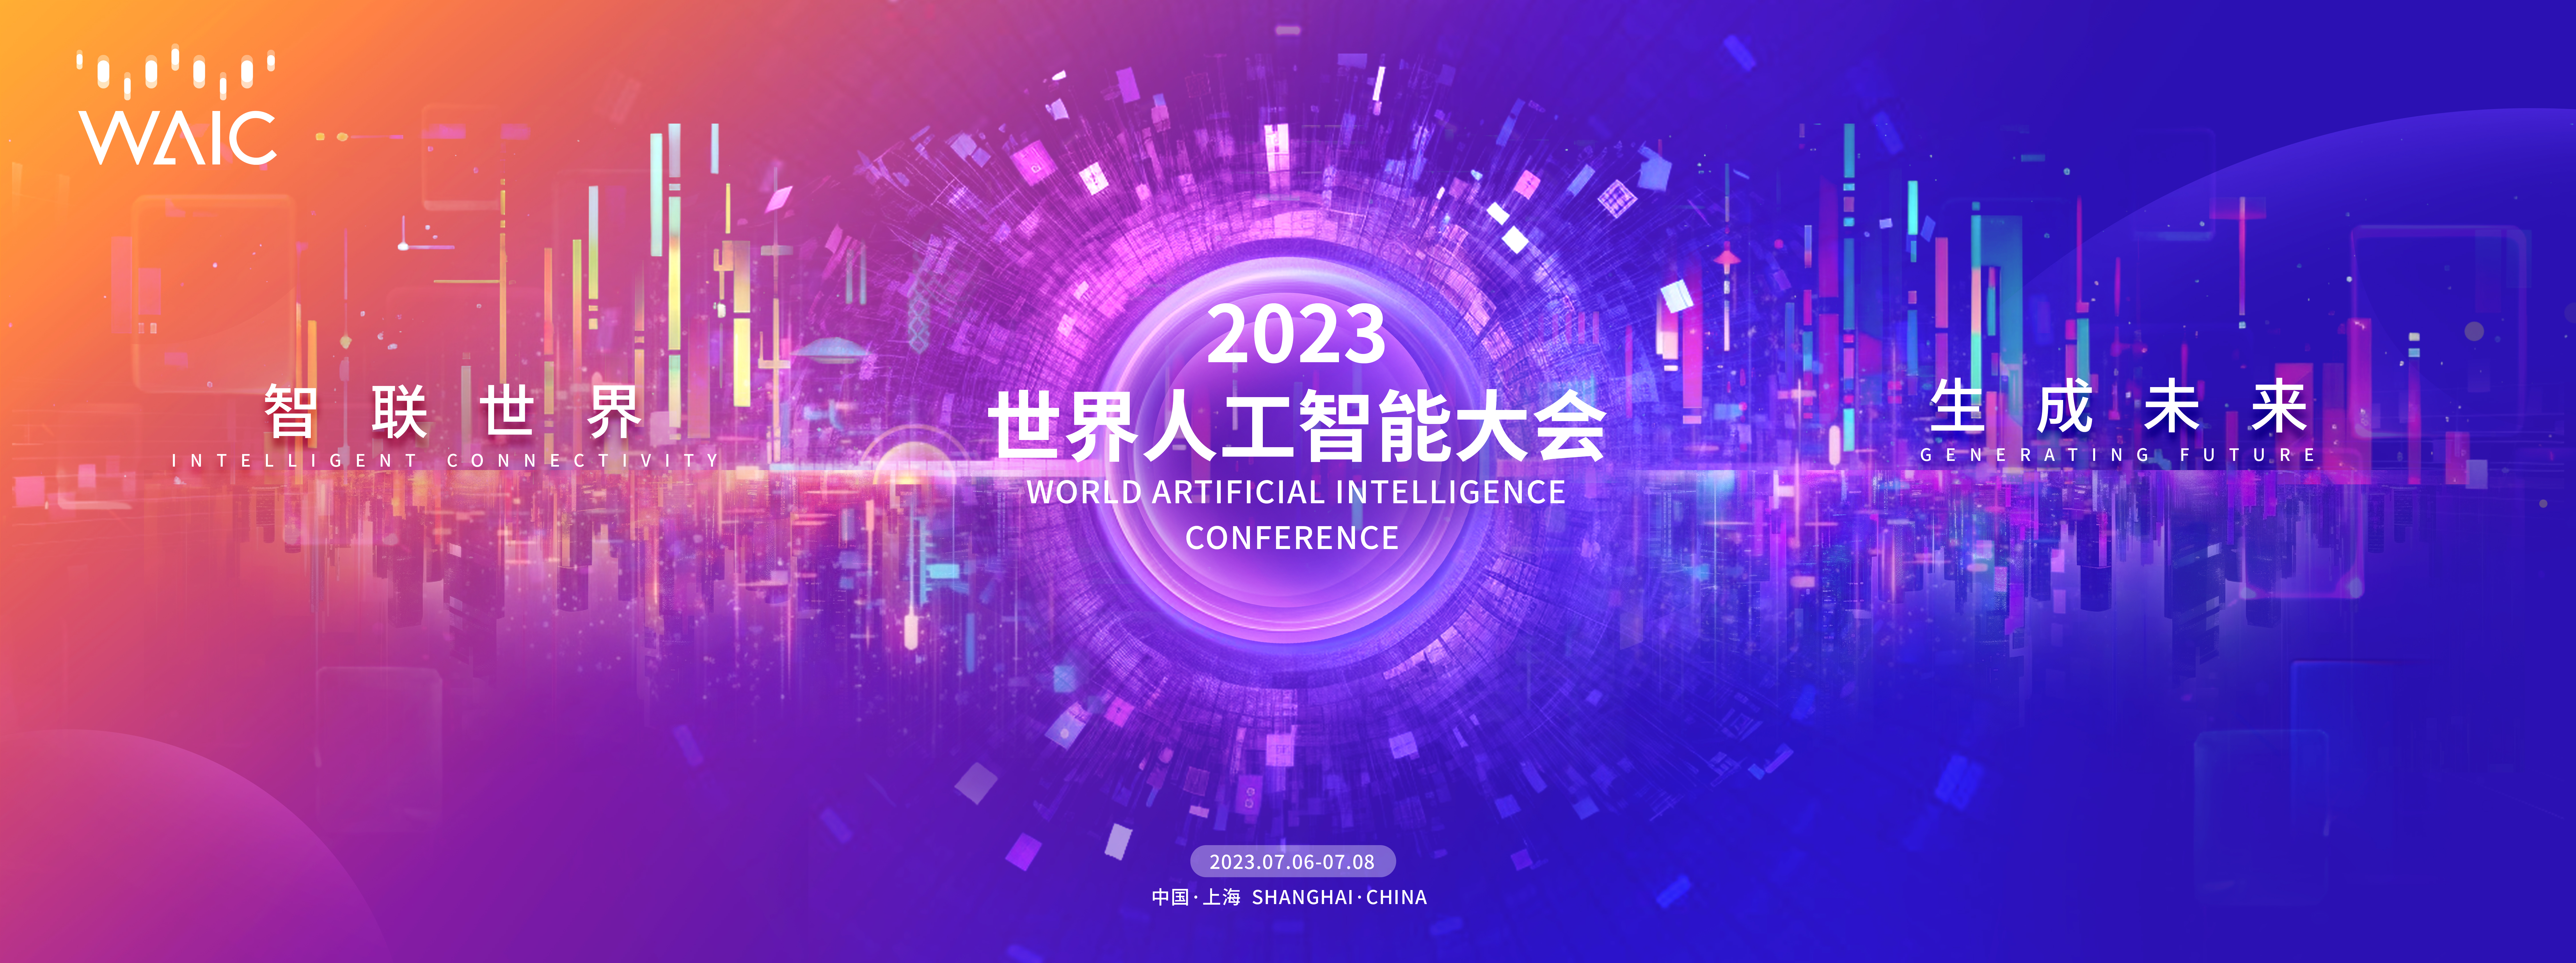 2023世界人工智能大会将于7月6-8日在上海举办